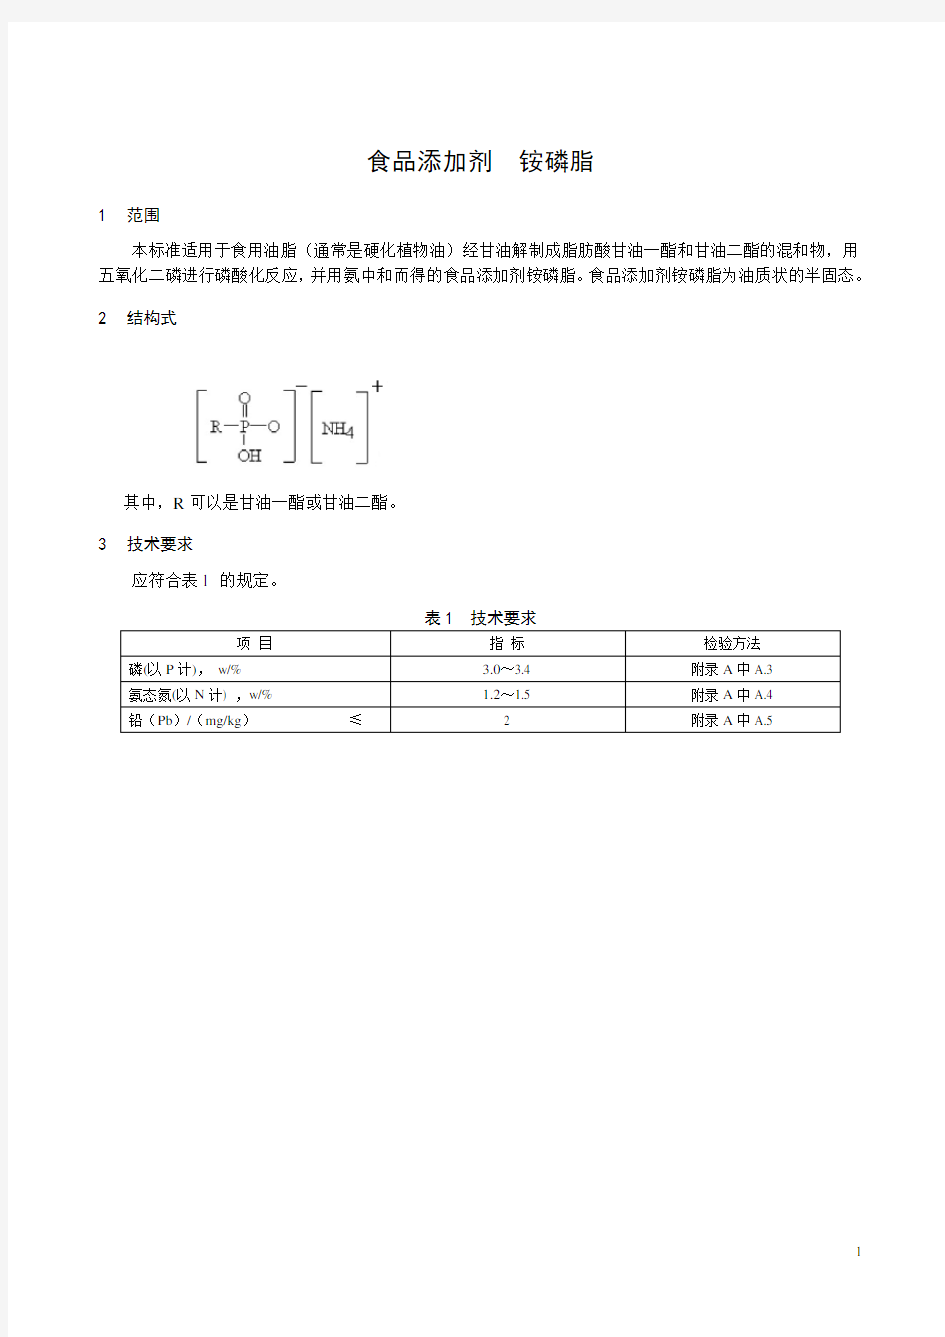 (完整word版)中华人民共和国国家标准gb2760食品添加剂